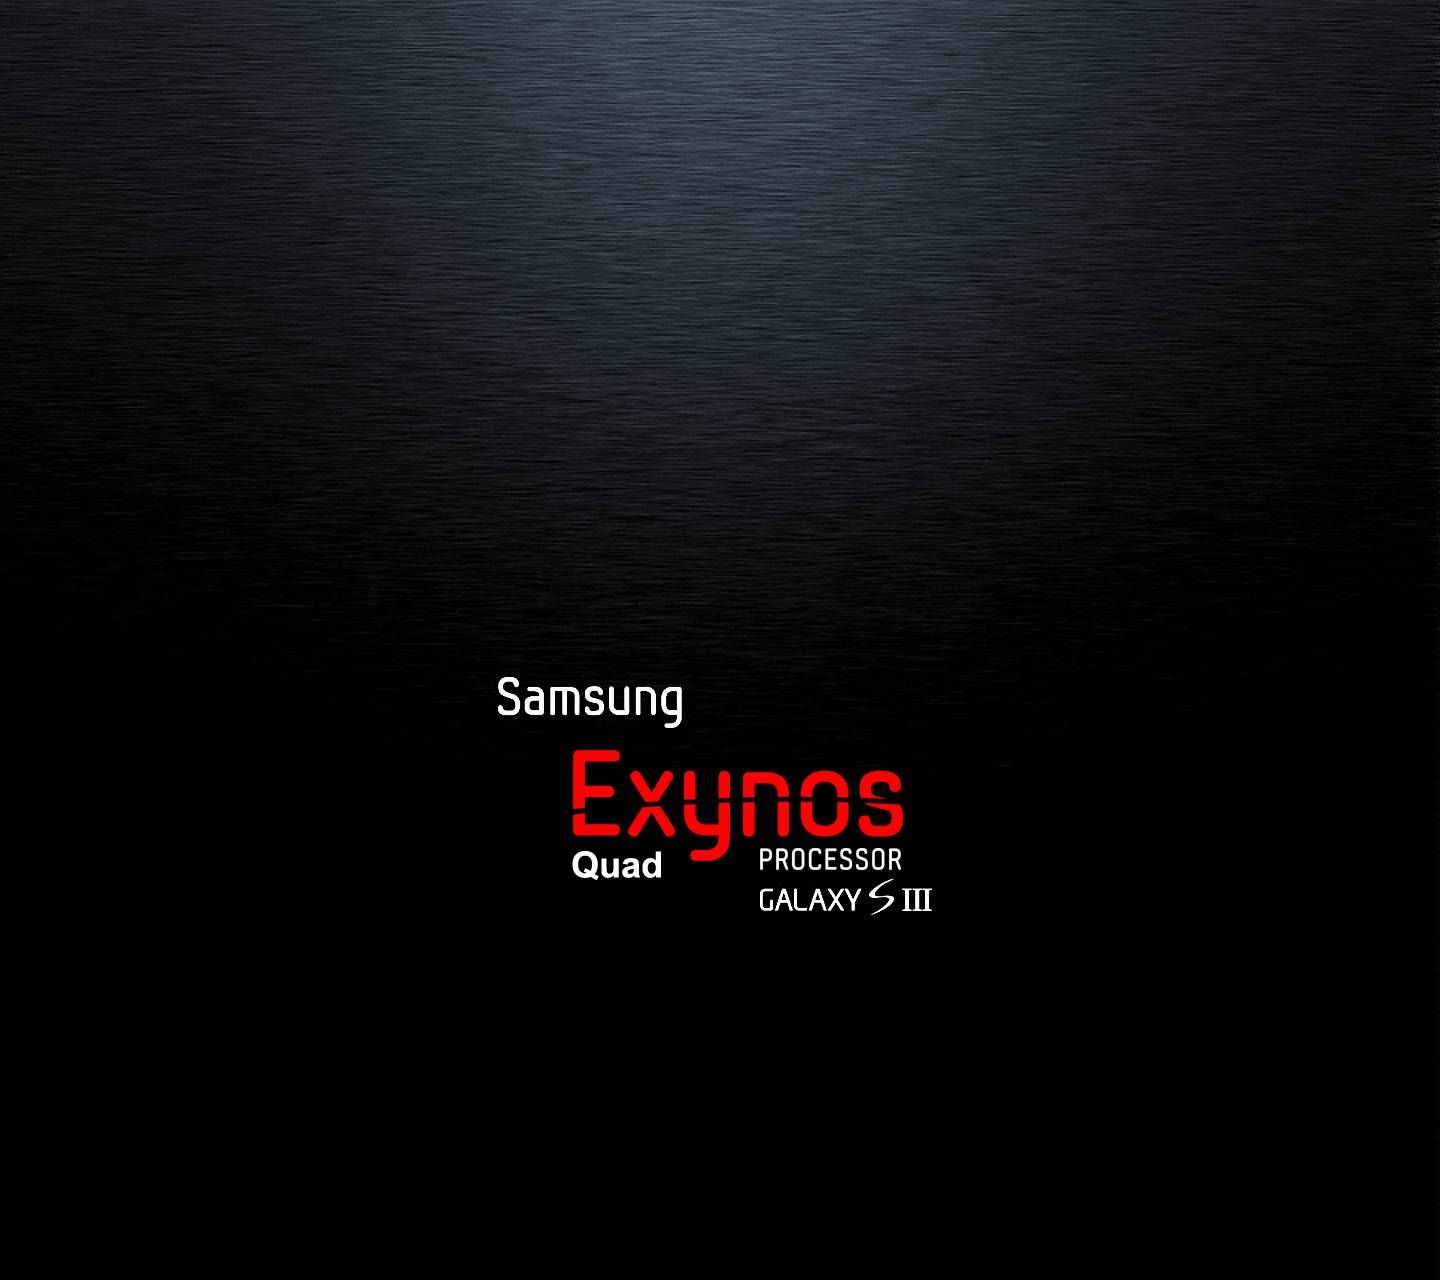 Разблокировать обои. Exynos Samsung логотип. Обои Exynos. Unlocked wallpare. Обои Разблокируй.